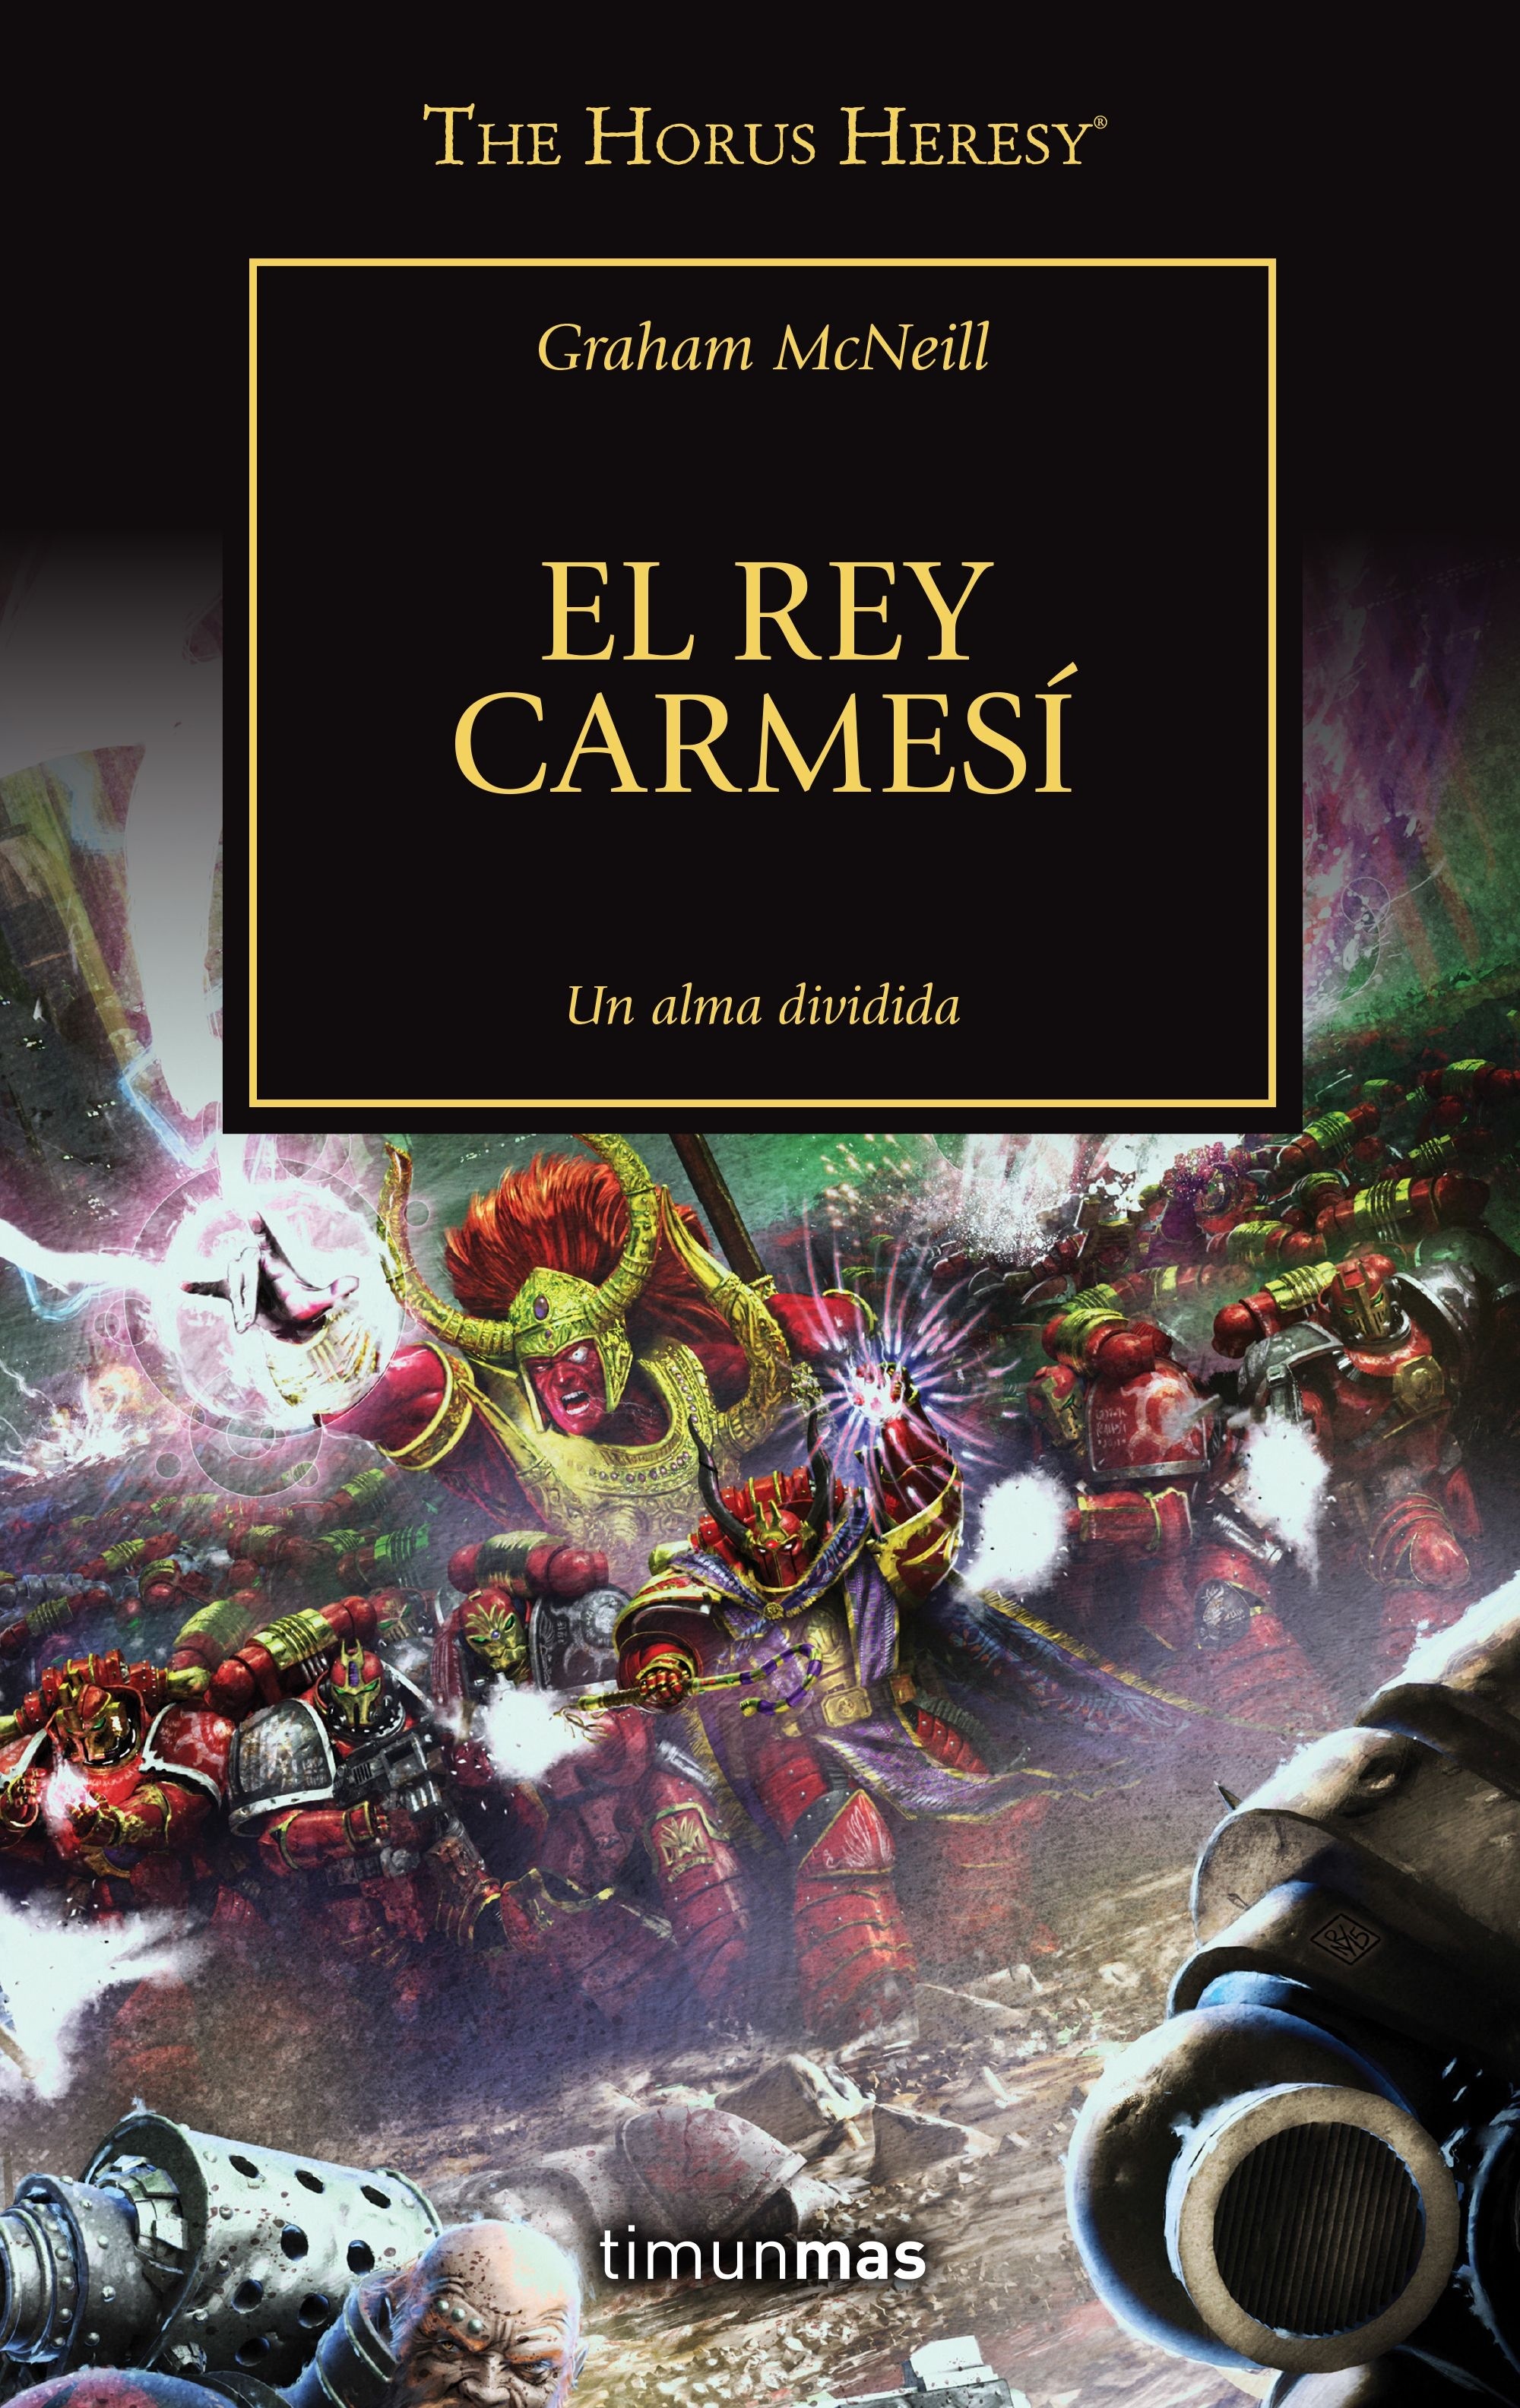 Rey Carmesí, El "La Herejía de Horus 44". 